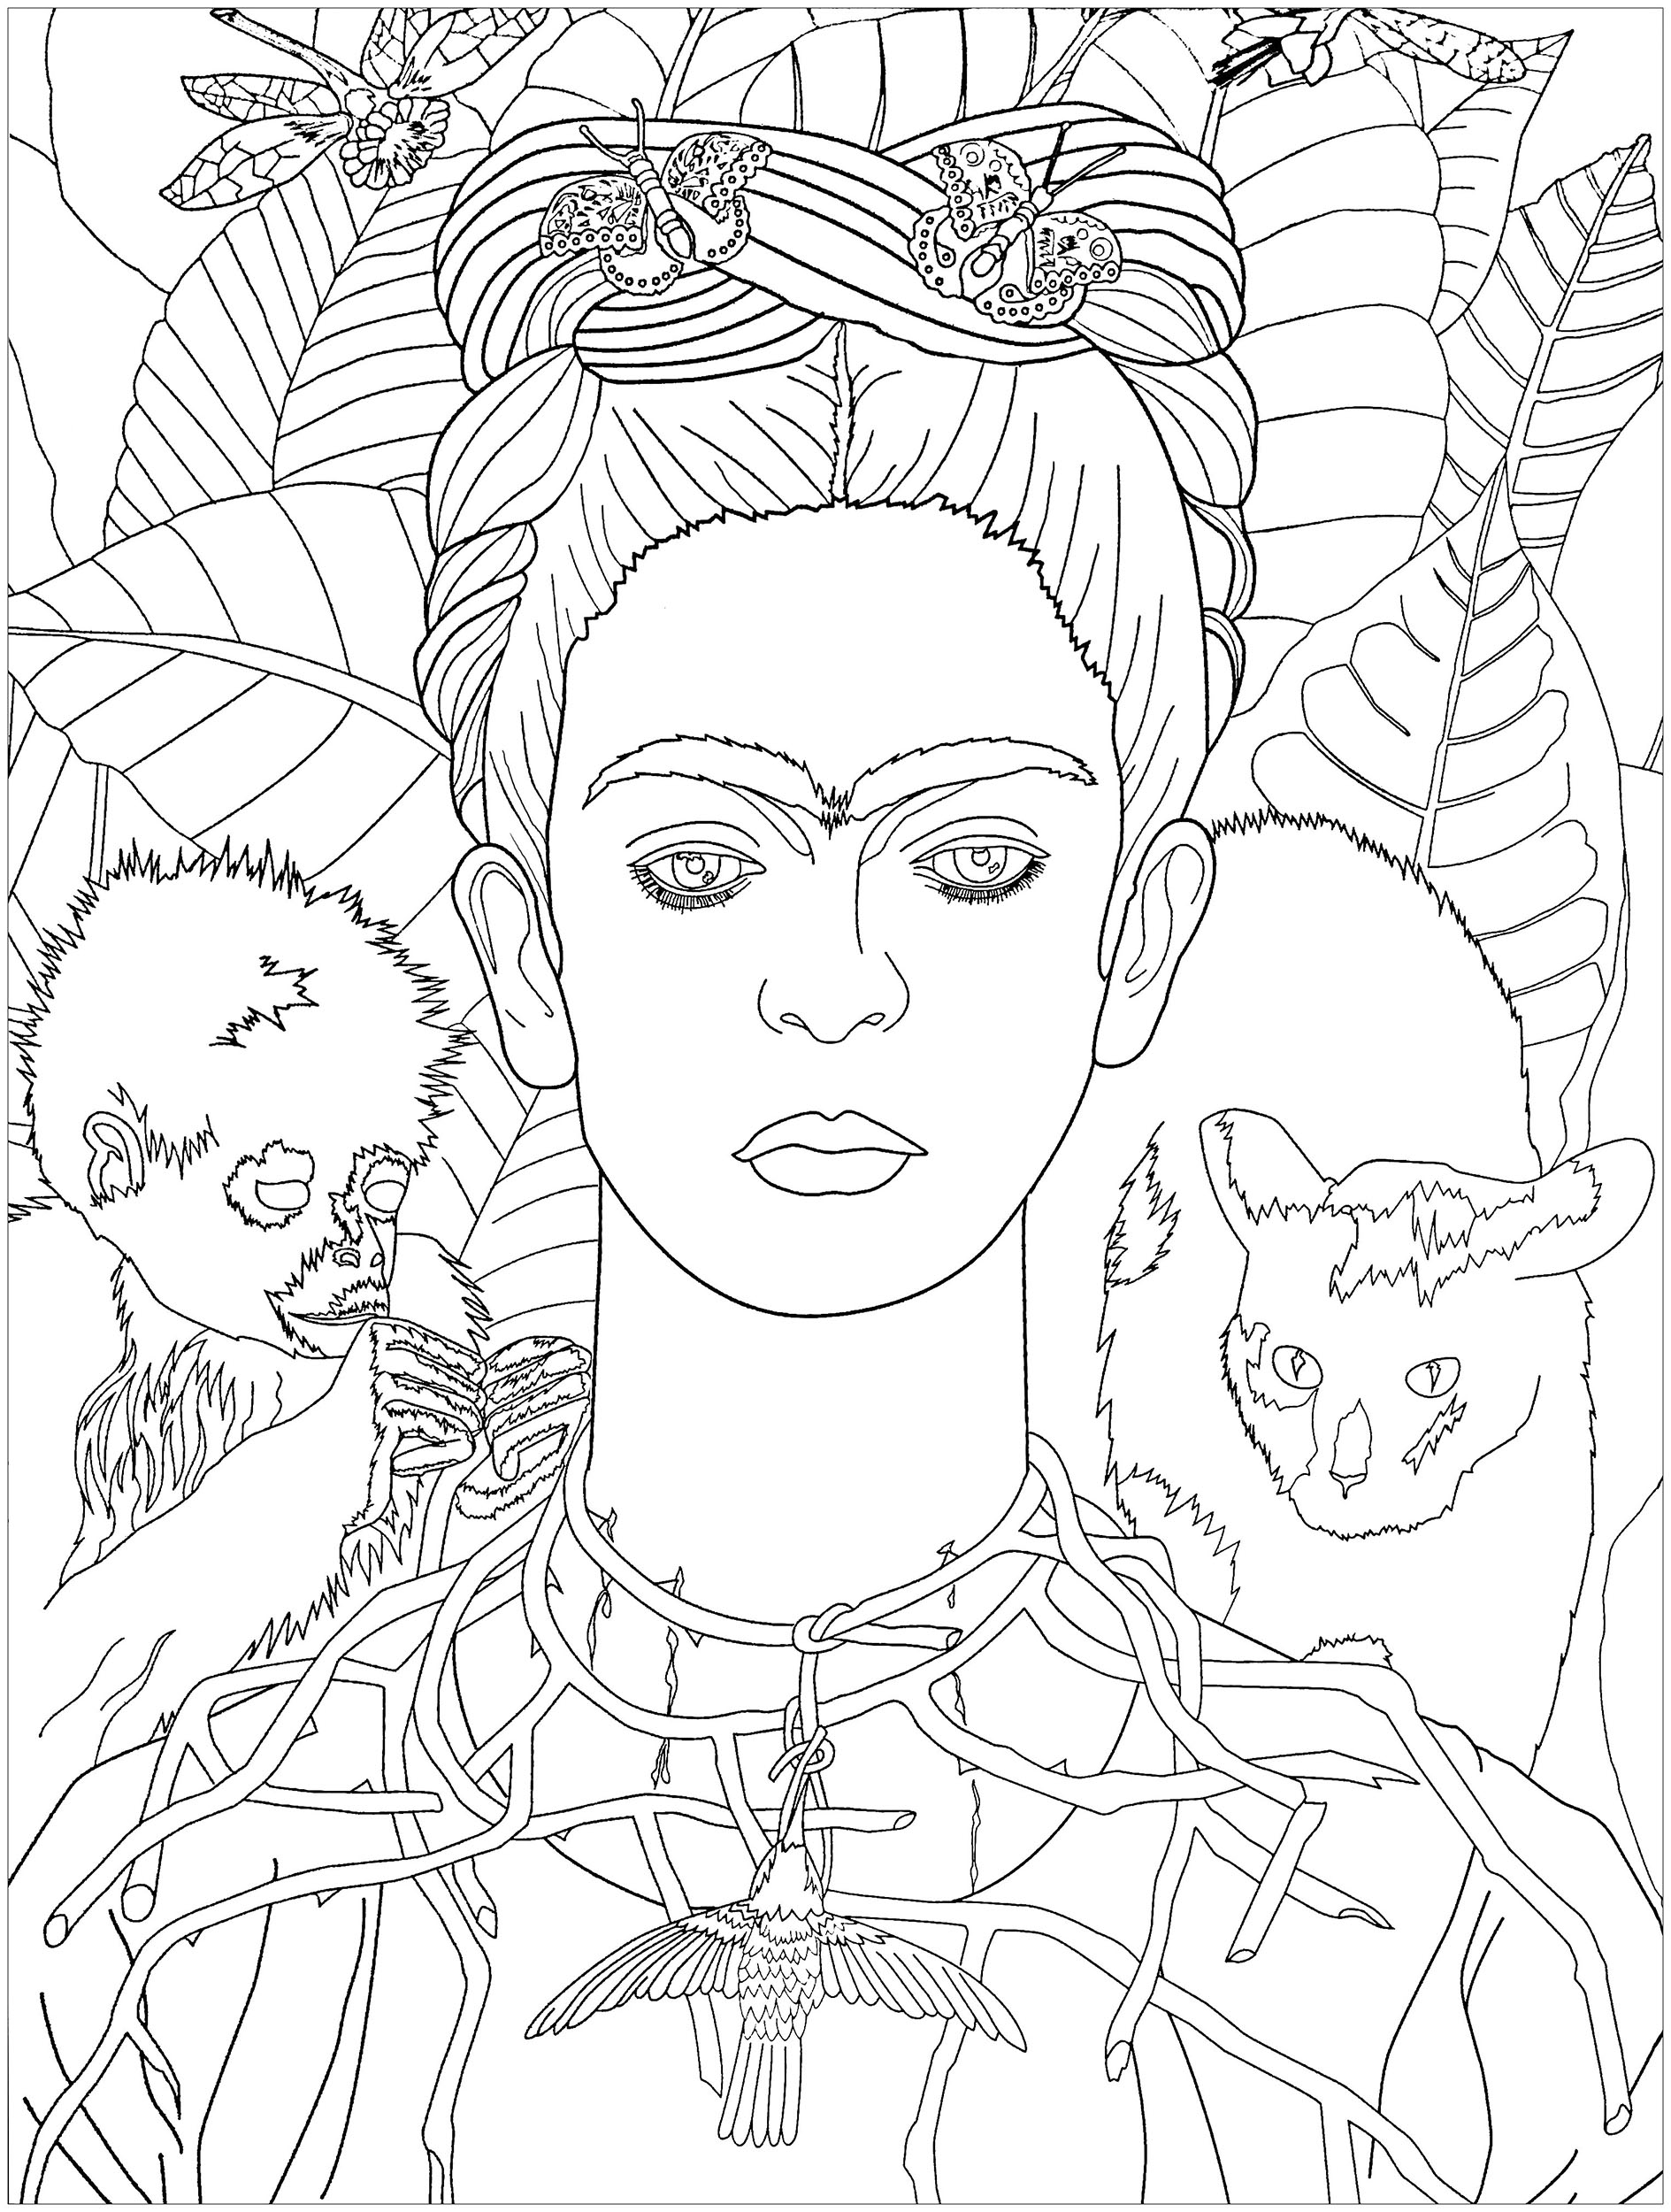 Autorretrato de Frida Kahlo com colar de espinhos (1940). Sabia que? Foi apenas alguns anos após a sua morte que o seu trabalho se tornou amplamente aclamado. A sua reputação cresceu na década de 1970 e atingiu o que alguns críticos chamaram de 'Fridamania' no século XXI.